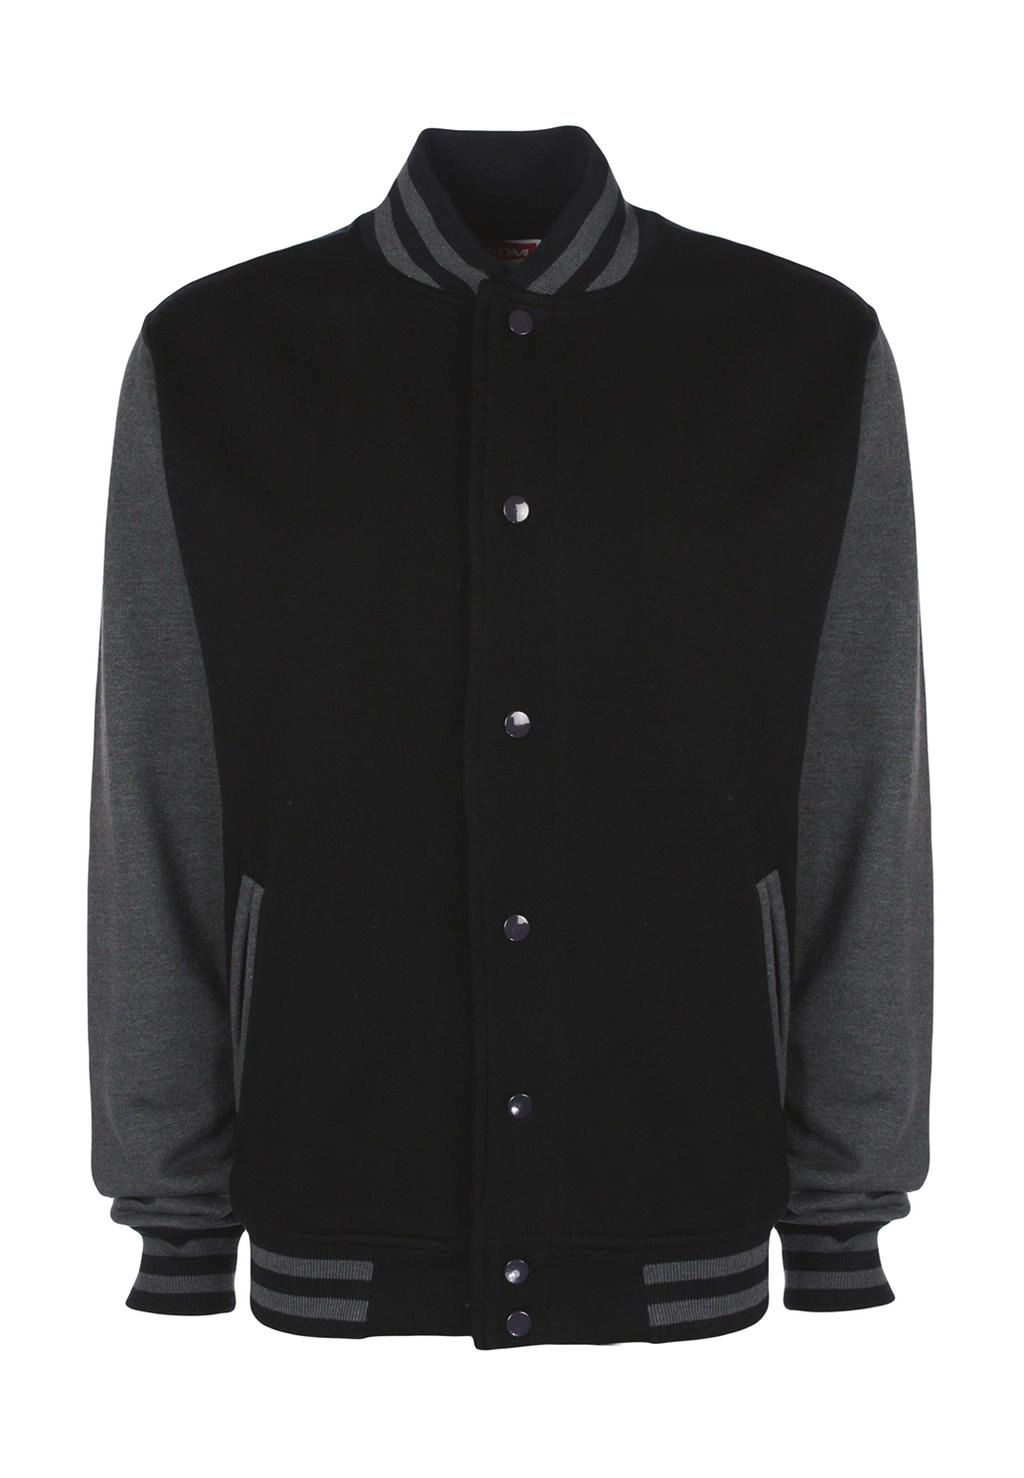 Varsity Jacket zum Besticken und Bedrucken in der Farbe Black/Charcoal mit Ihren Logo, Schriftzug oder Motiv.